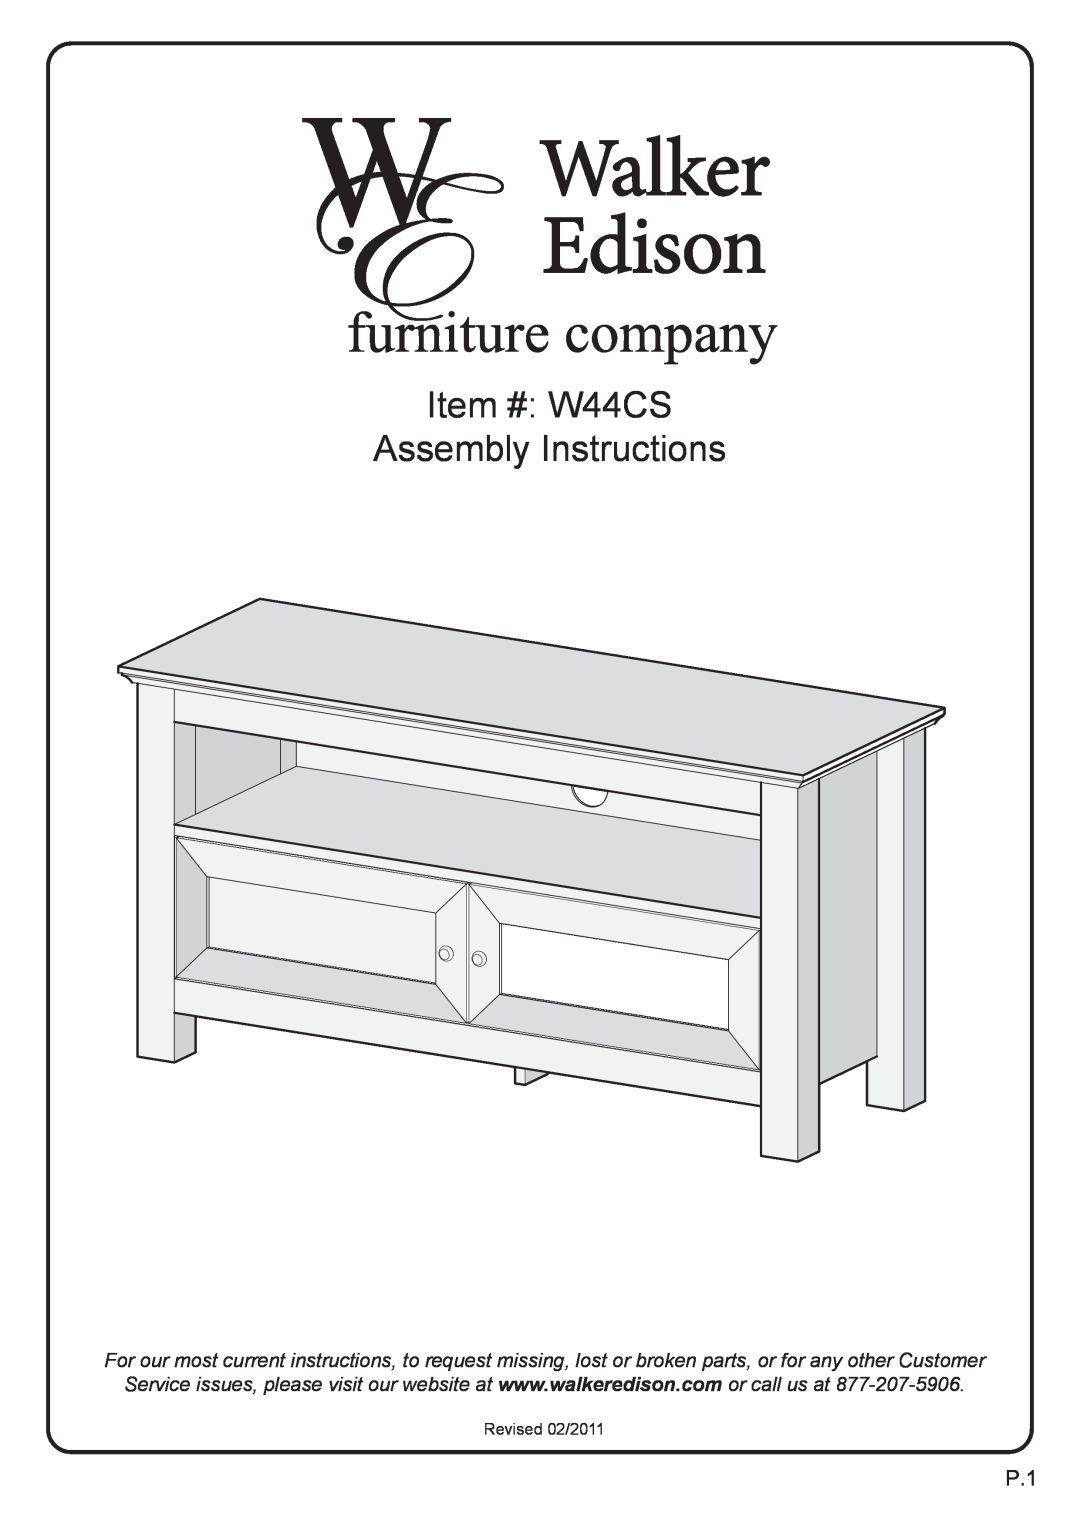 Walker W44CSBL, WQ44CSTB manual Item # W44CS Assembly Instructions, Revised 02/2011 